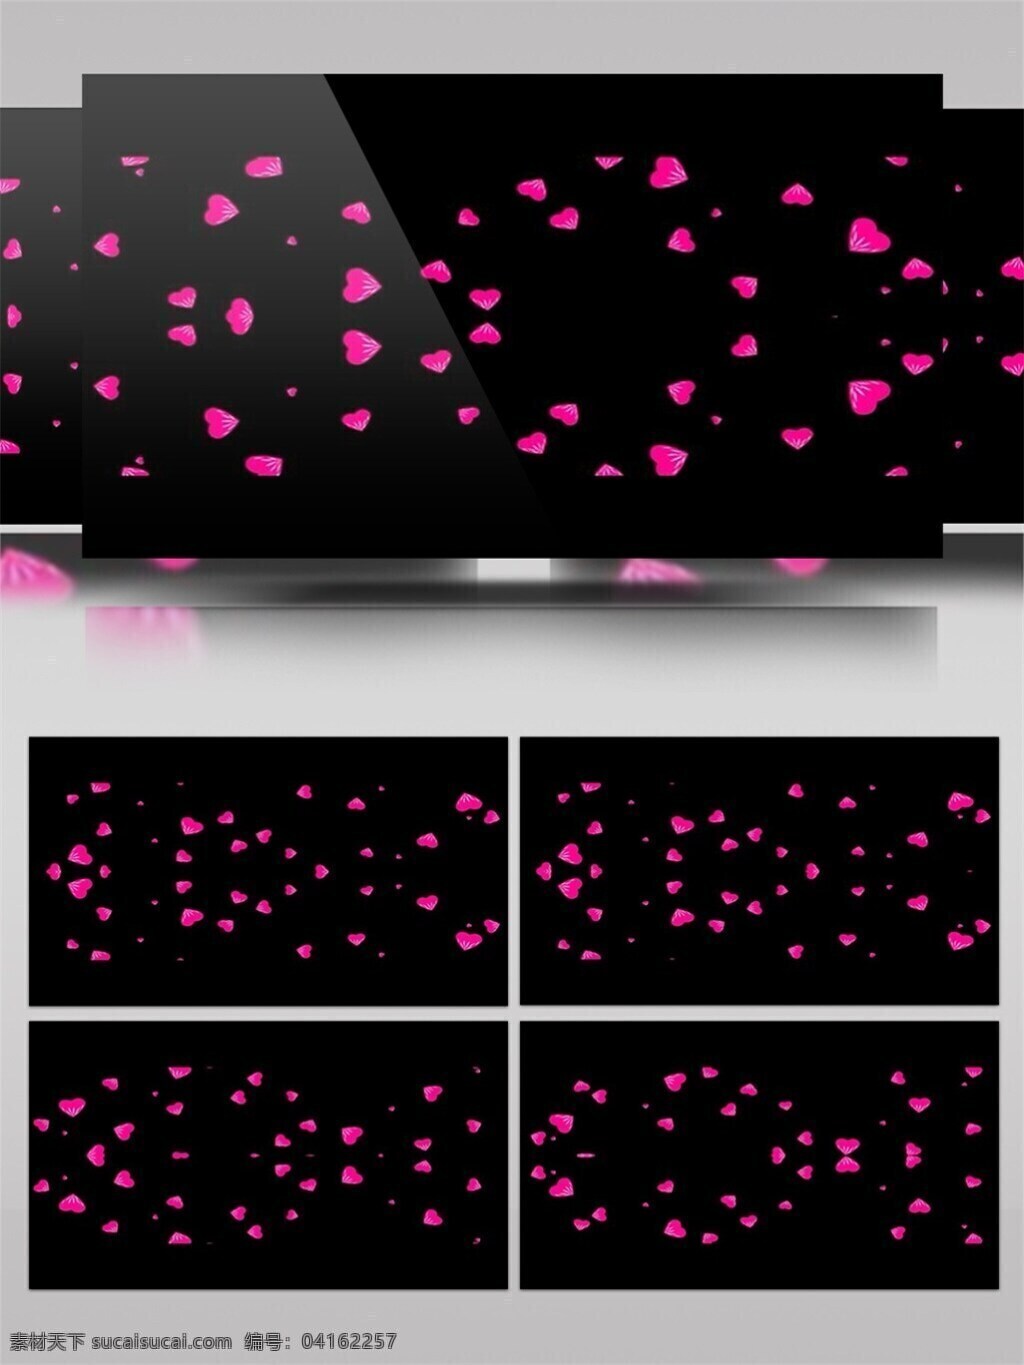 大量 心形 翻滚 动态 视频 婚礼 背景 灯光 粉色 视频素材 动态视频素材